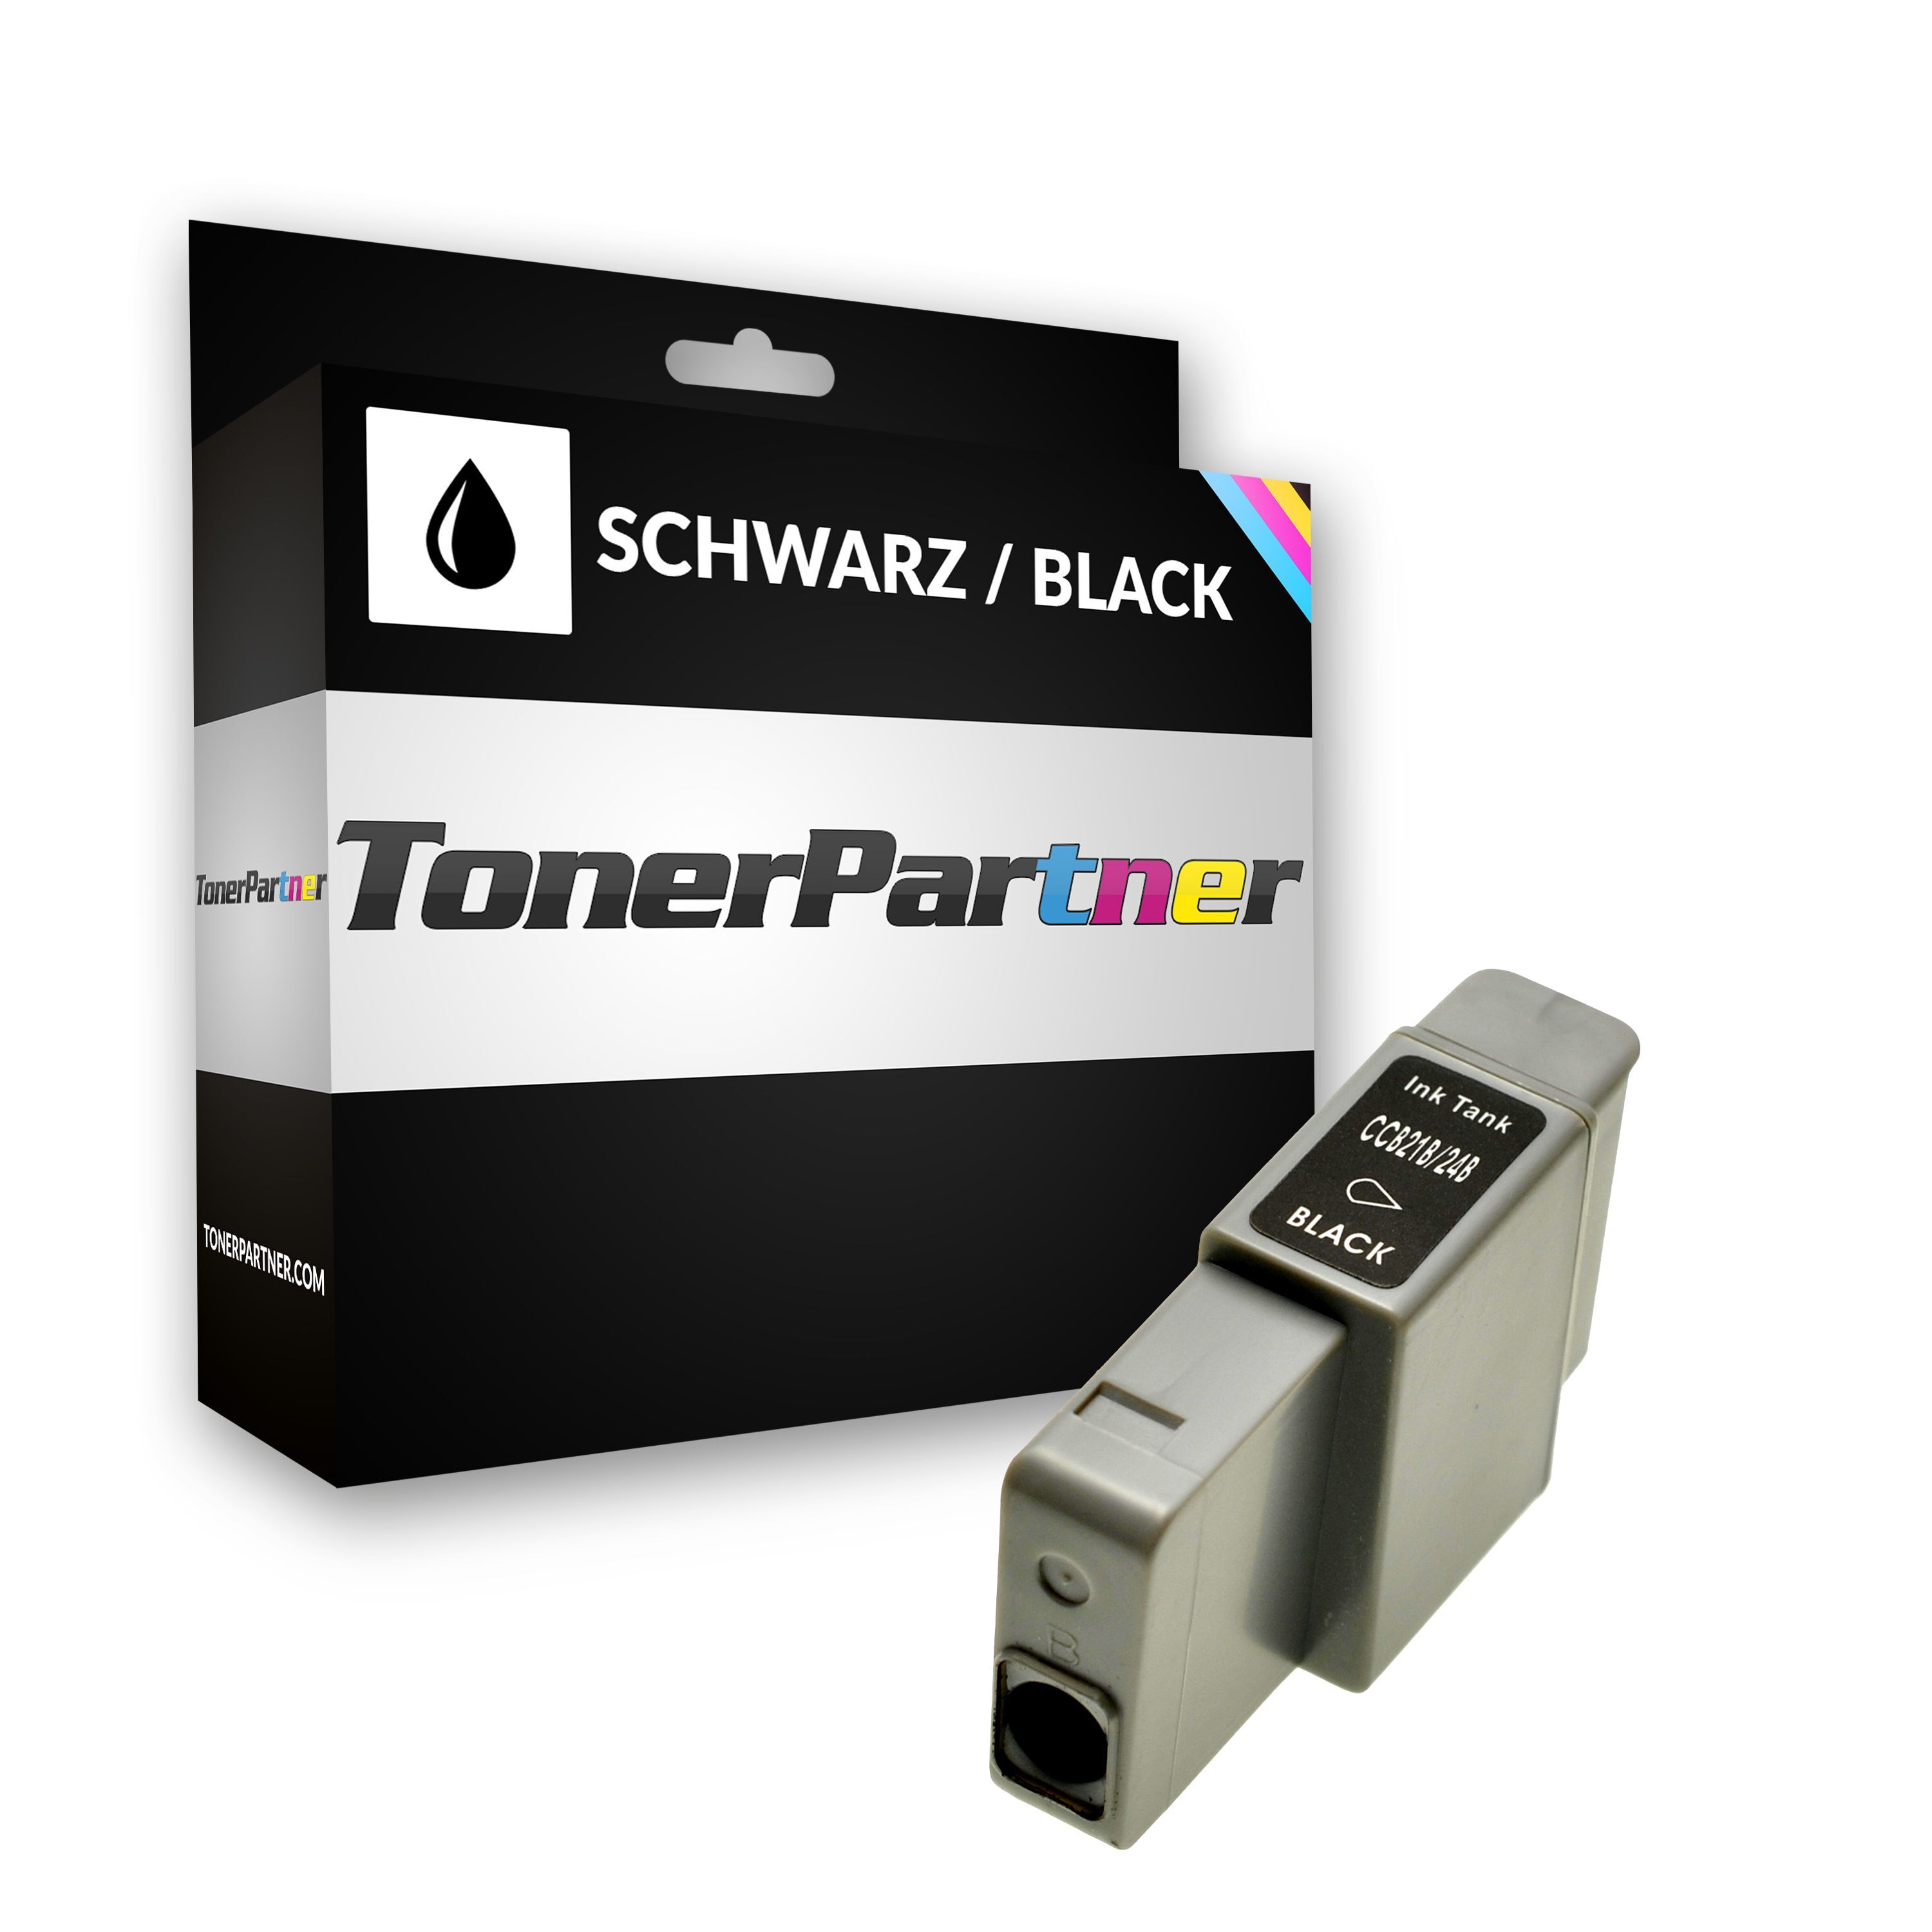 TonerPartner Kompatibel zu Canon BCI-24 BK / 6881 A 002 Tintenpatrone schwarz, 240 Seiten, 1,44 Rp pro Seite, Inhalt: 9 ml von TonerPartner